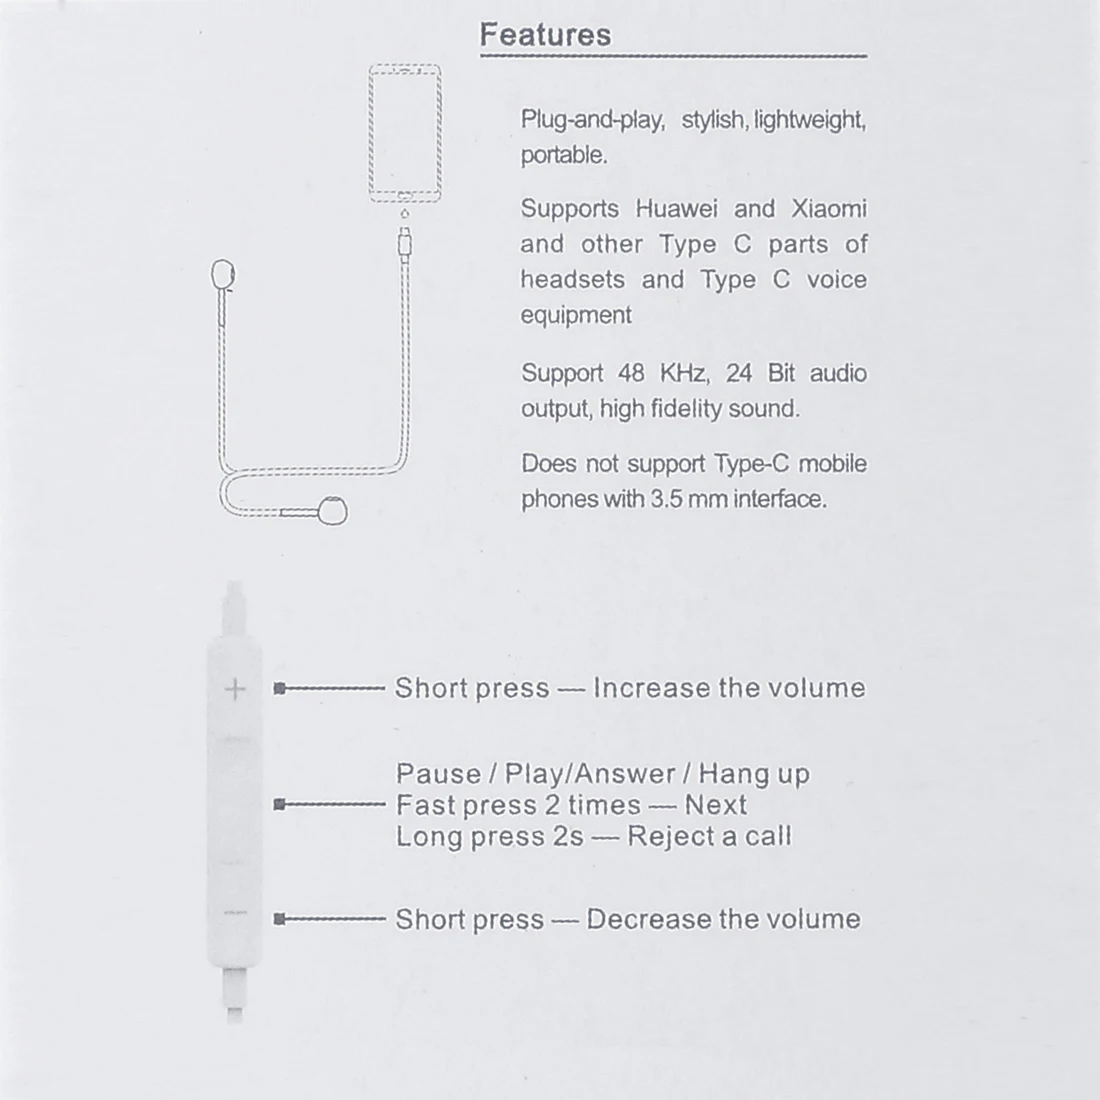 HAWEEL 1.2 m Przewodowa W Uchu USB-C / Type-C Interfejsowa zestaw Słuchawkowy z Mikrofonem Dla Huawei, Xiaomi i innych smartfonów z USB-C / Type-C